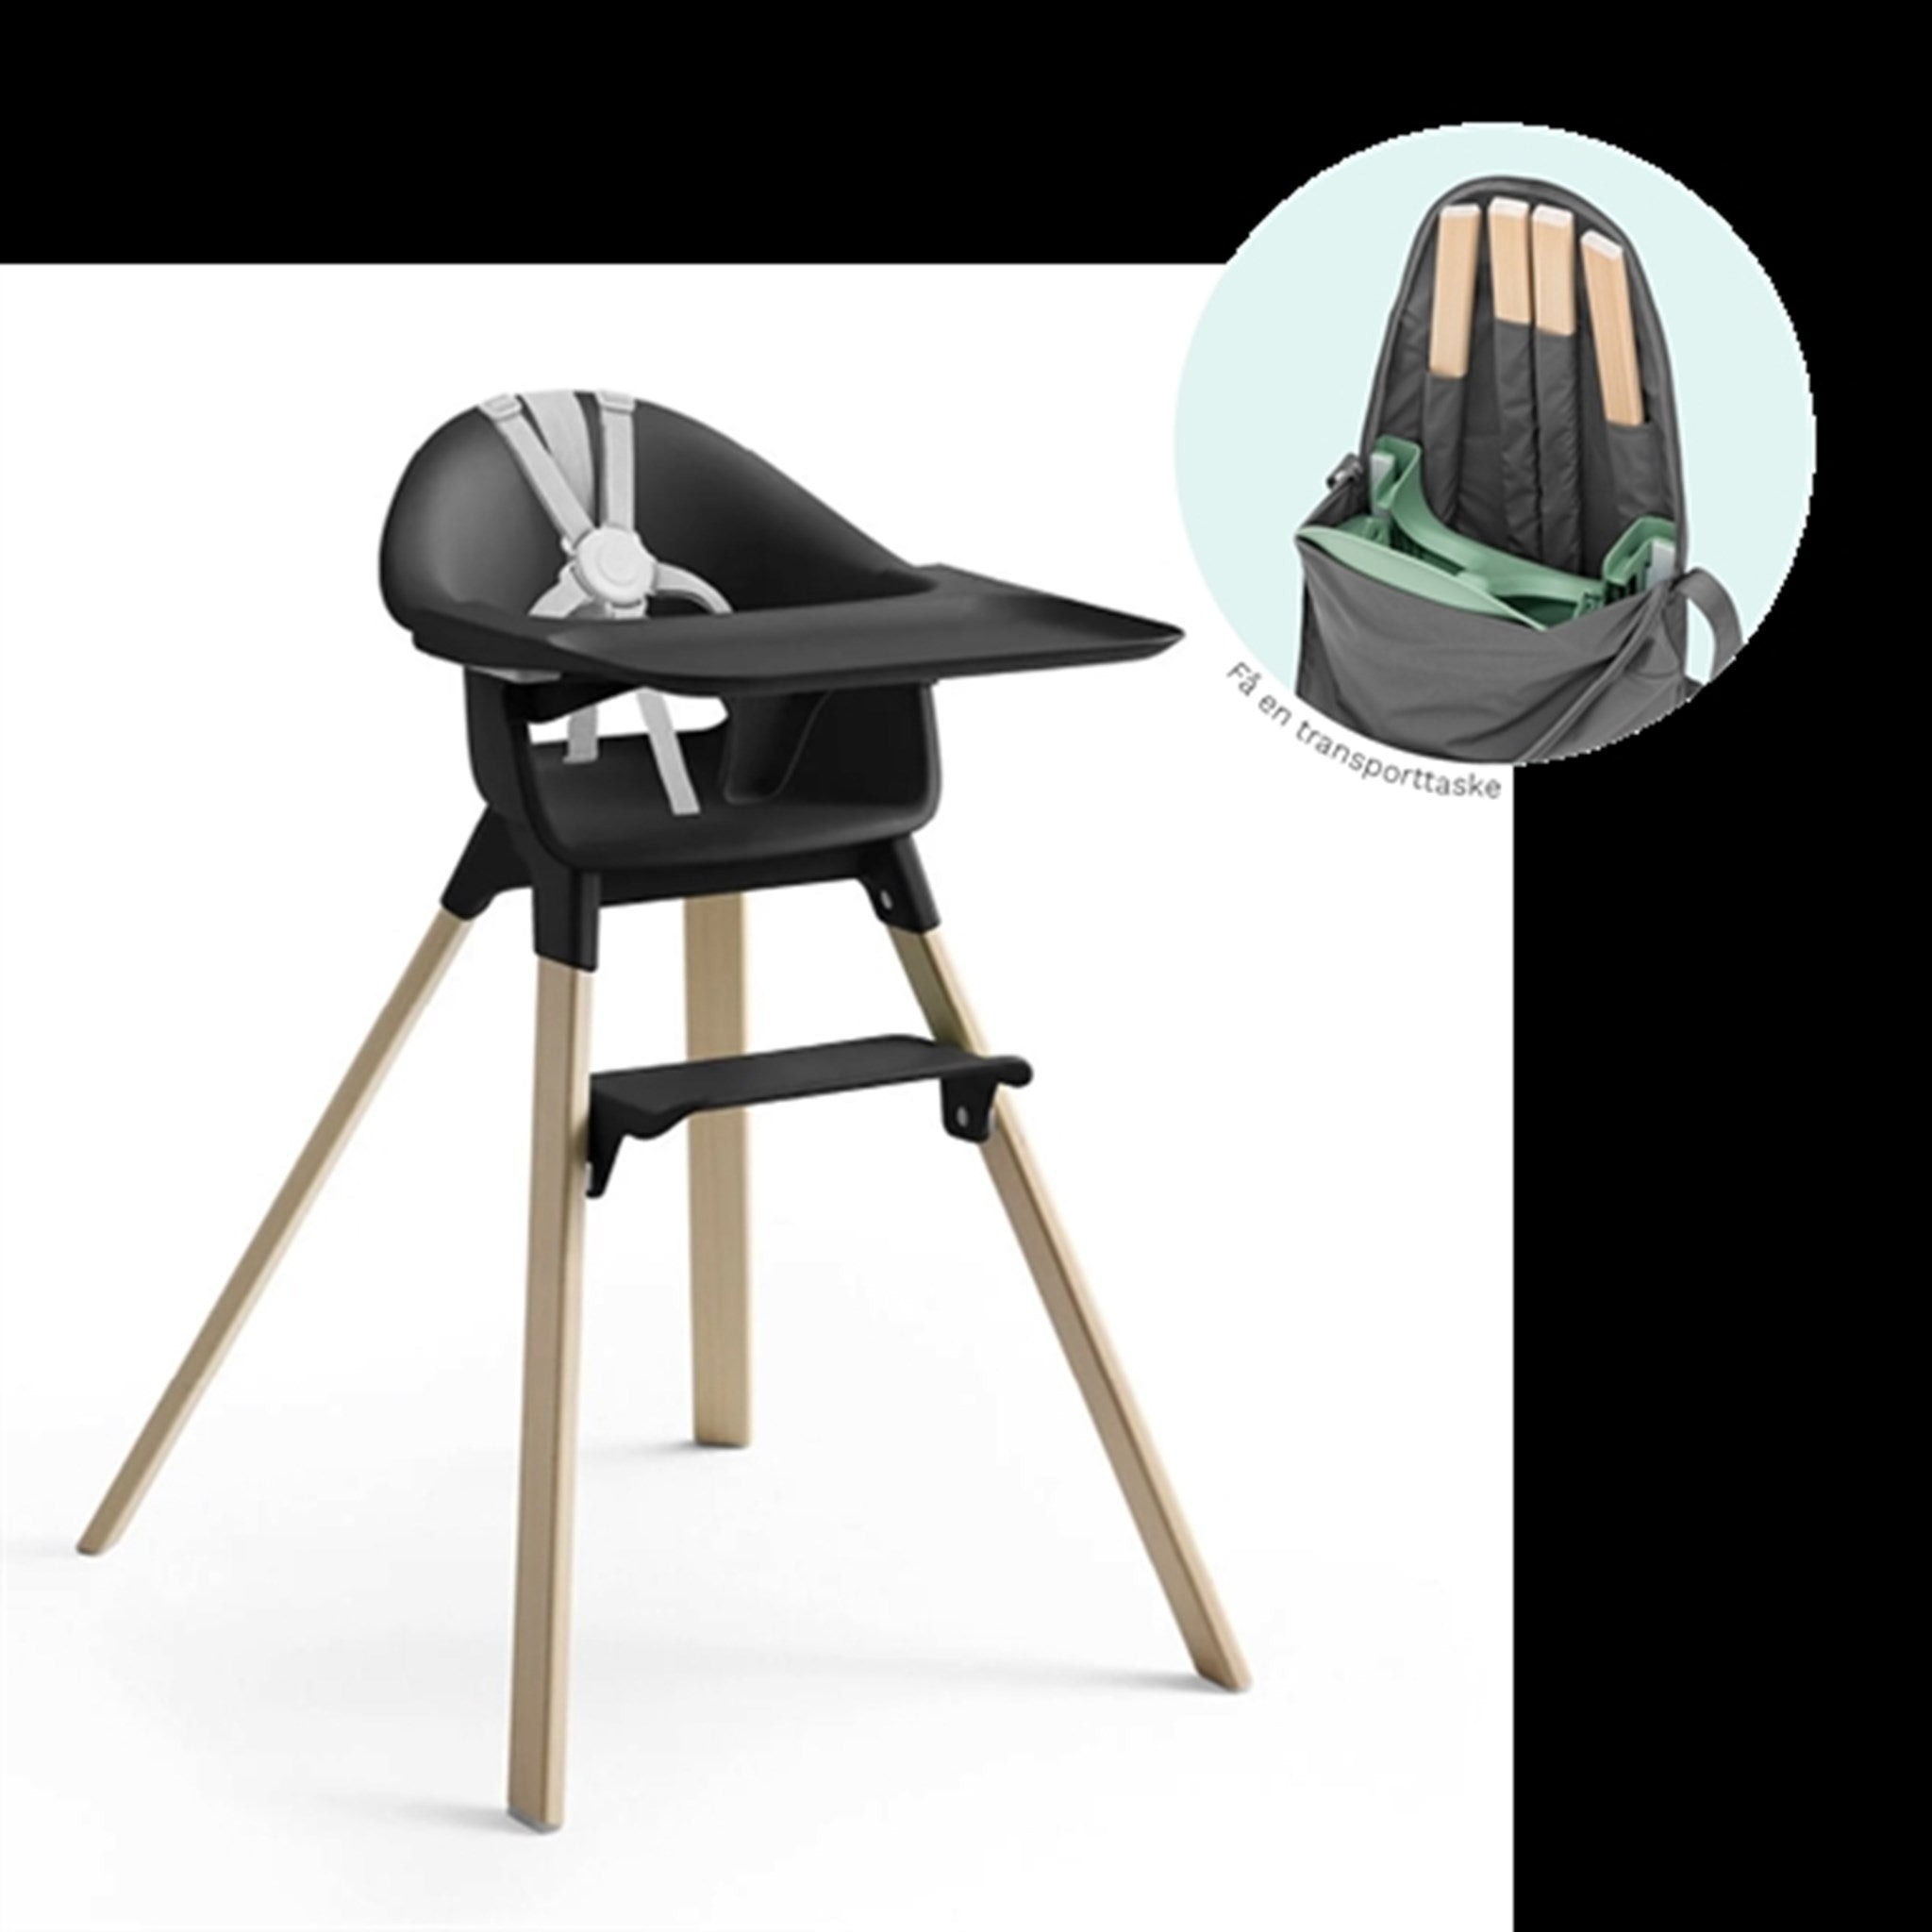 Stokke® Clikk™ High Chair Black Natural